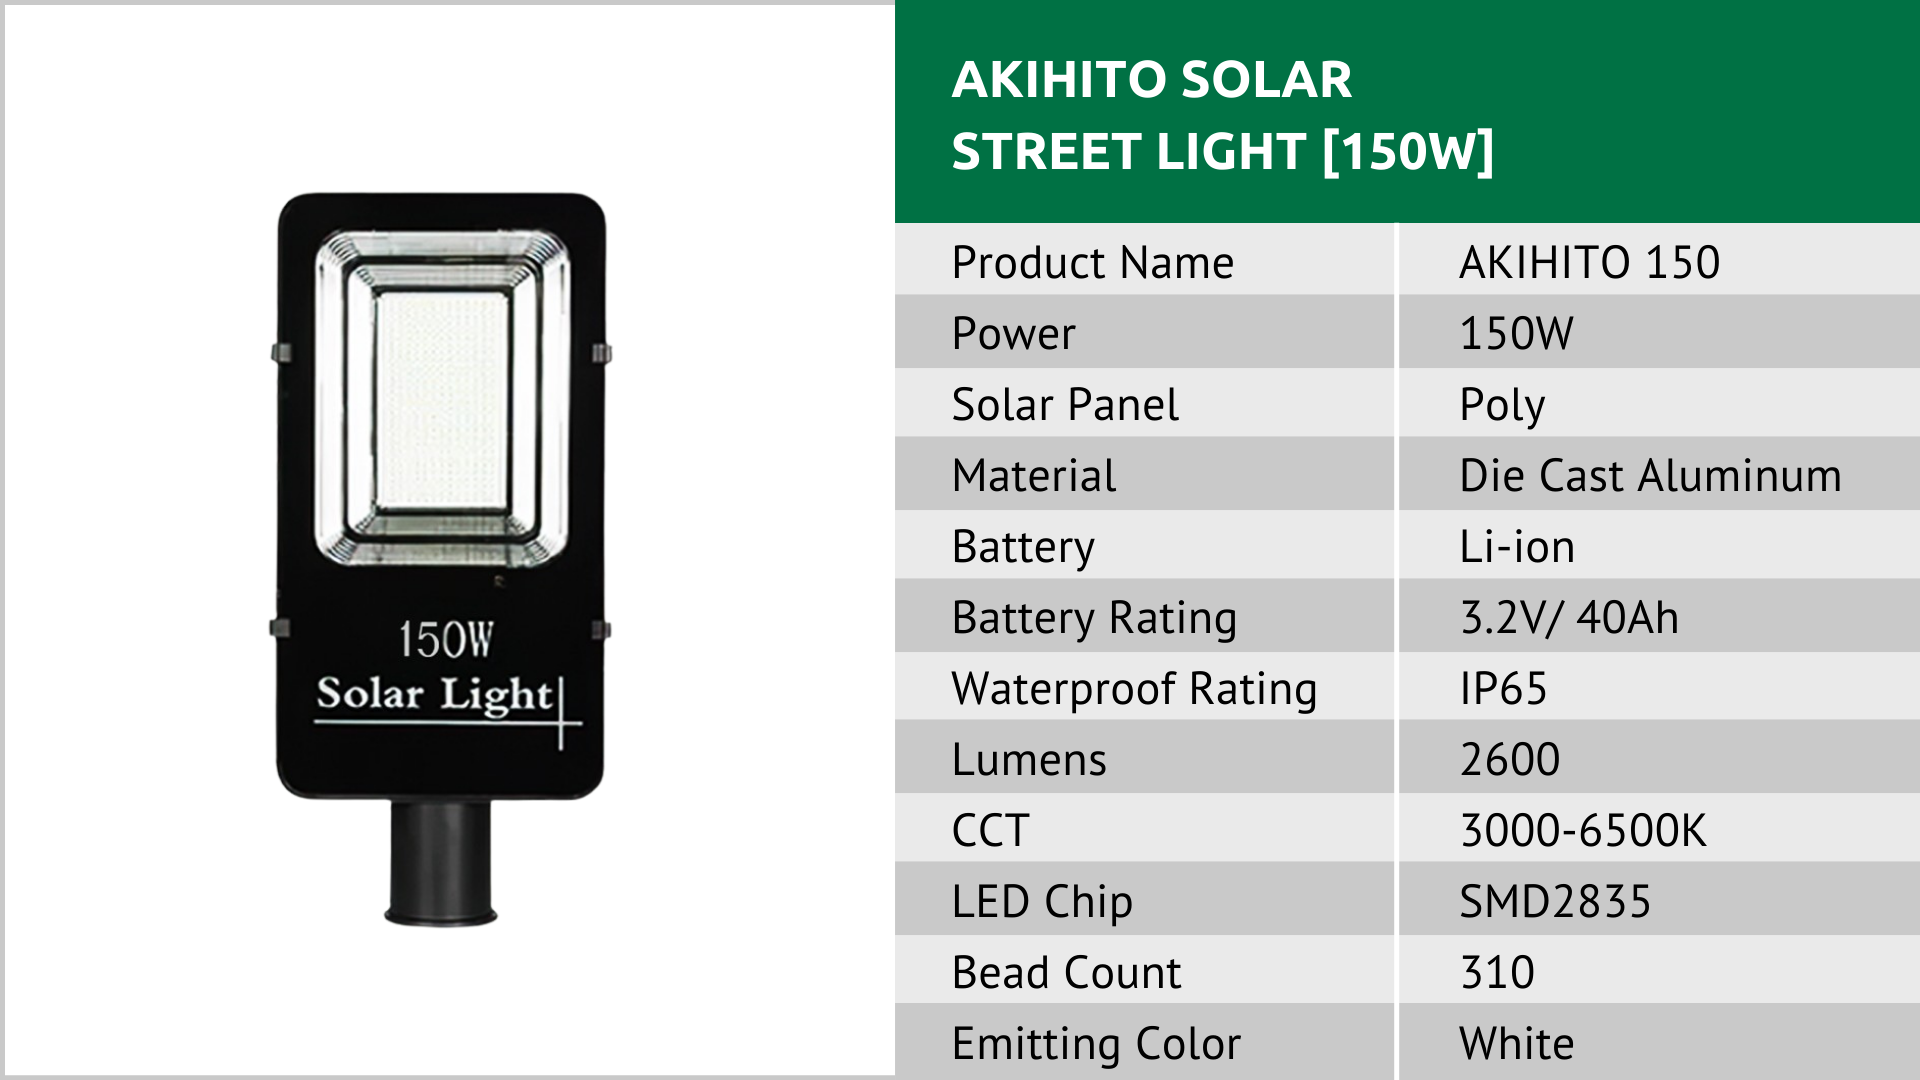 TAKIYO JAPAN™ AKIHITO (100W, 150W & 200W) Solar Street Light